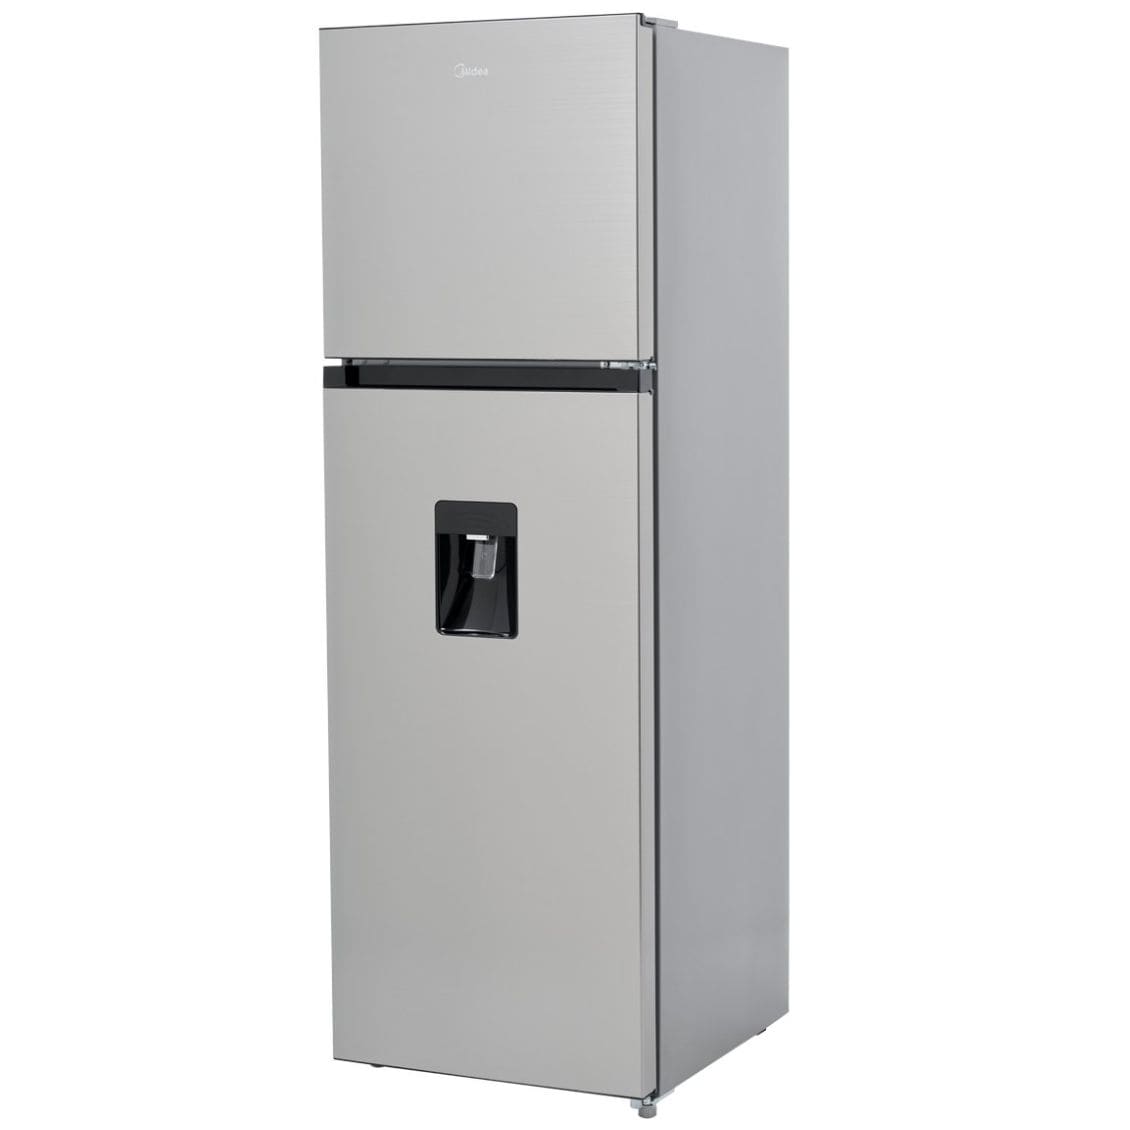 Refrigerador Top Mount Midea 10 P3 Inoxidable Mdrt280Windxw